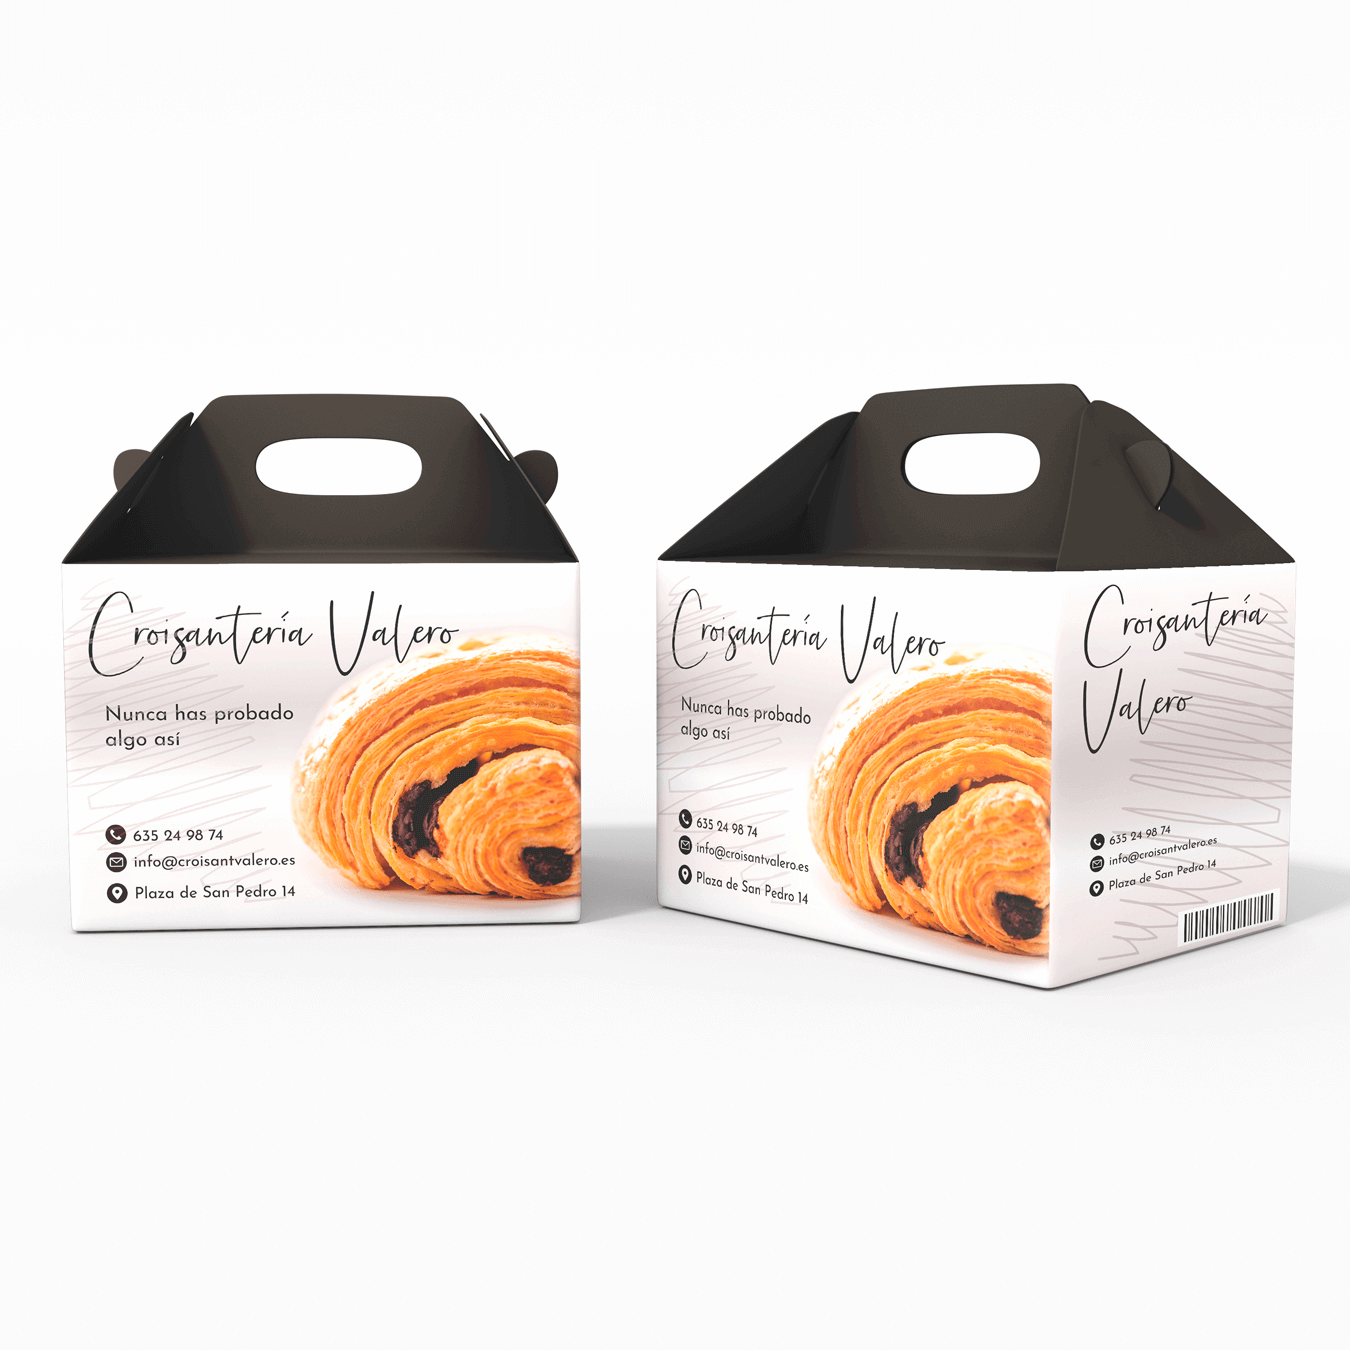 Imagen de dos cajas de comida con asa en la parte superior. Aparece la imagen de un croissant relleno de chocolate, el logotipo de la Croissantería Valero y los datos de contacto de la marca. La caja es blanca y la parte del asa es gris ocuro.